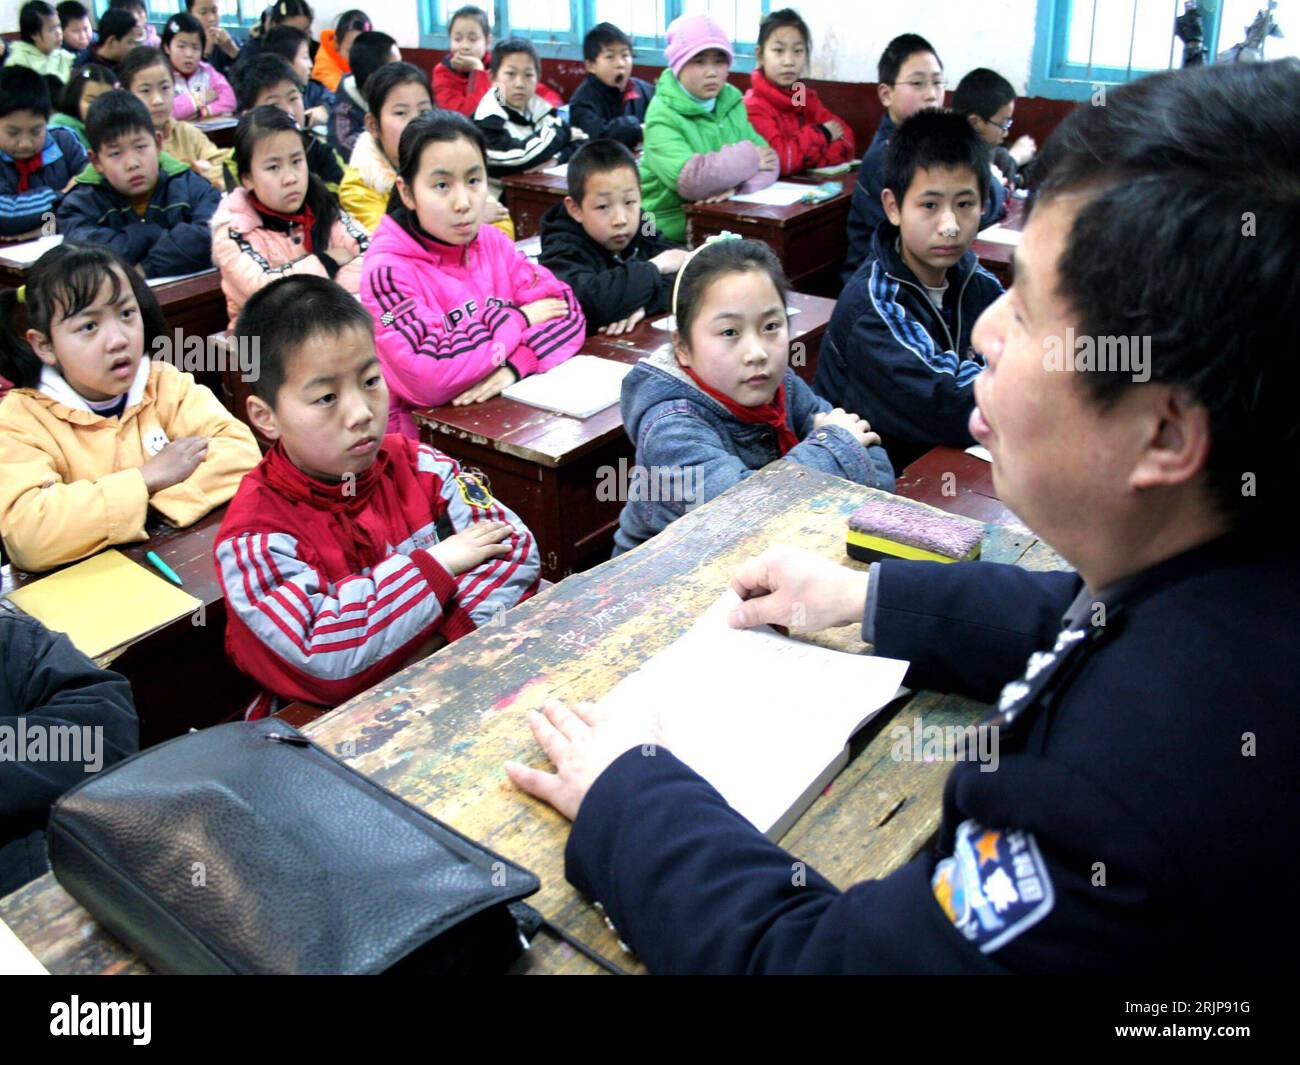 Bildnummer: 51130193 Datum: 27.02.2006 Copyright: imago/Xinhua Polizist erklärt den Schülern einer Grundschulklasse die ab 1. März gültigen Gesetze und Vorschriften öffentlichen Lebens in einer Grundschule in Shaodong County - Provinz Hunan - Cina - PUBLICATIONxNOTxINxCHN, Personen; 2006, Shaodong County, Chinese, Chinesen, Einheimischer, Einheimische, tipo, Kinder, Junge, Jungen, Mädchen, Schüler, Schülerin, Schulkind, Schulkinder, Klasse, Klassen, Klassenraum, Klassenräume, Unterricht, Unterrichtsstunde, Unterrichtsstunden, Land, Leute, Polizisten, Information, informiert, informieren, in Foto Stock